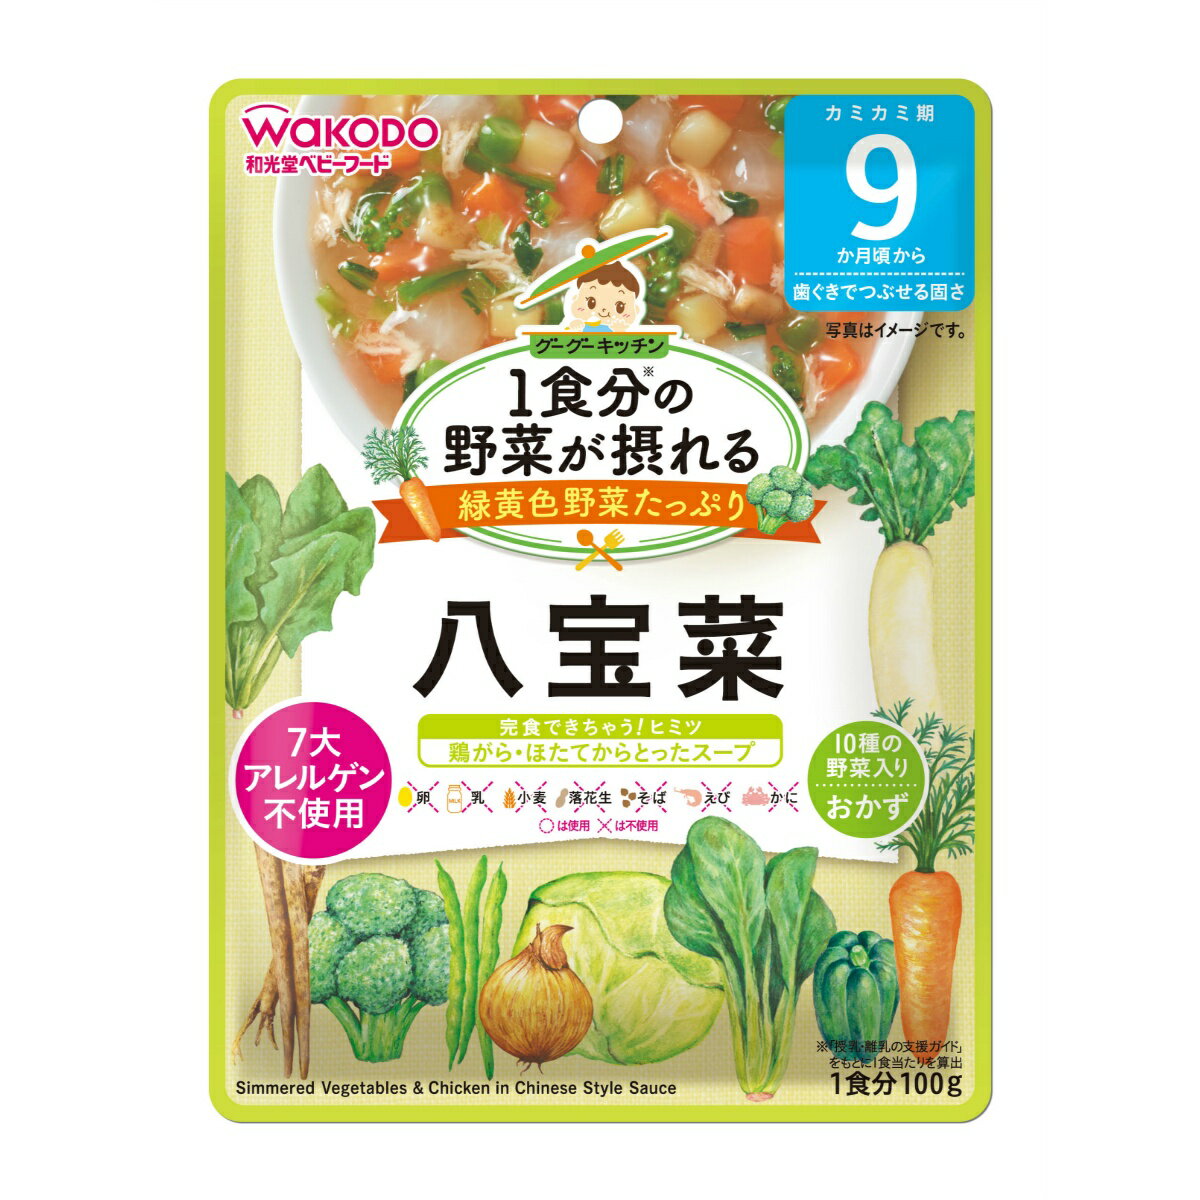 【令和・早い者勝ちセール】和光堂 グーグーキッチン 1食分の野菜が摂れる 八宝菜 100G